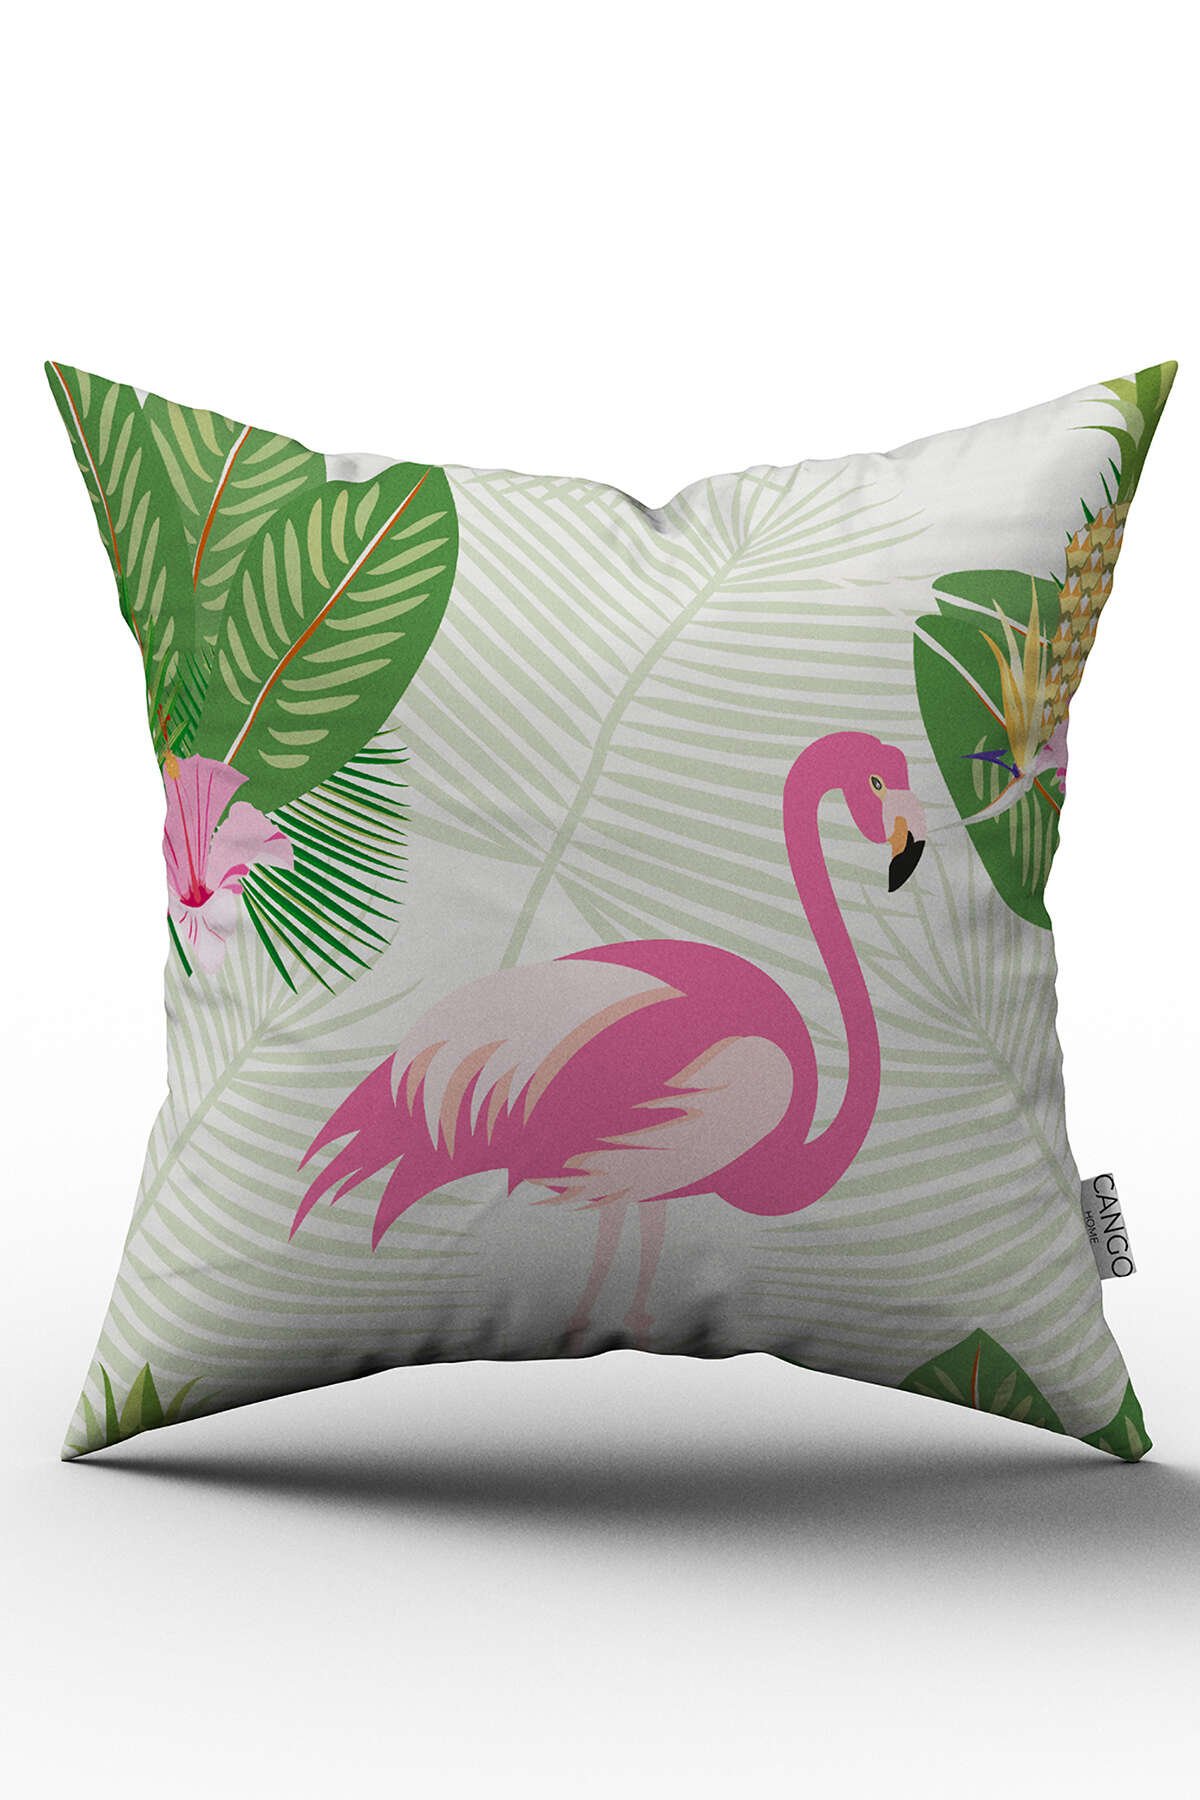 Çift Taraflı Pembe Yeşil Tropikal Flamingo Desenli Dijital Baskılı Kırlent  Kılıfı - OTYK563-CT